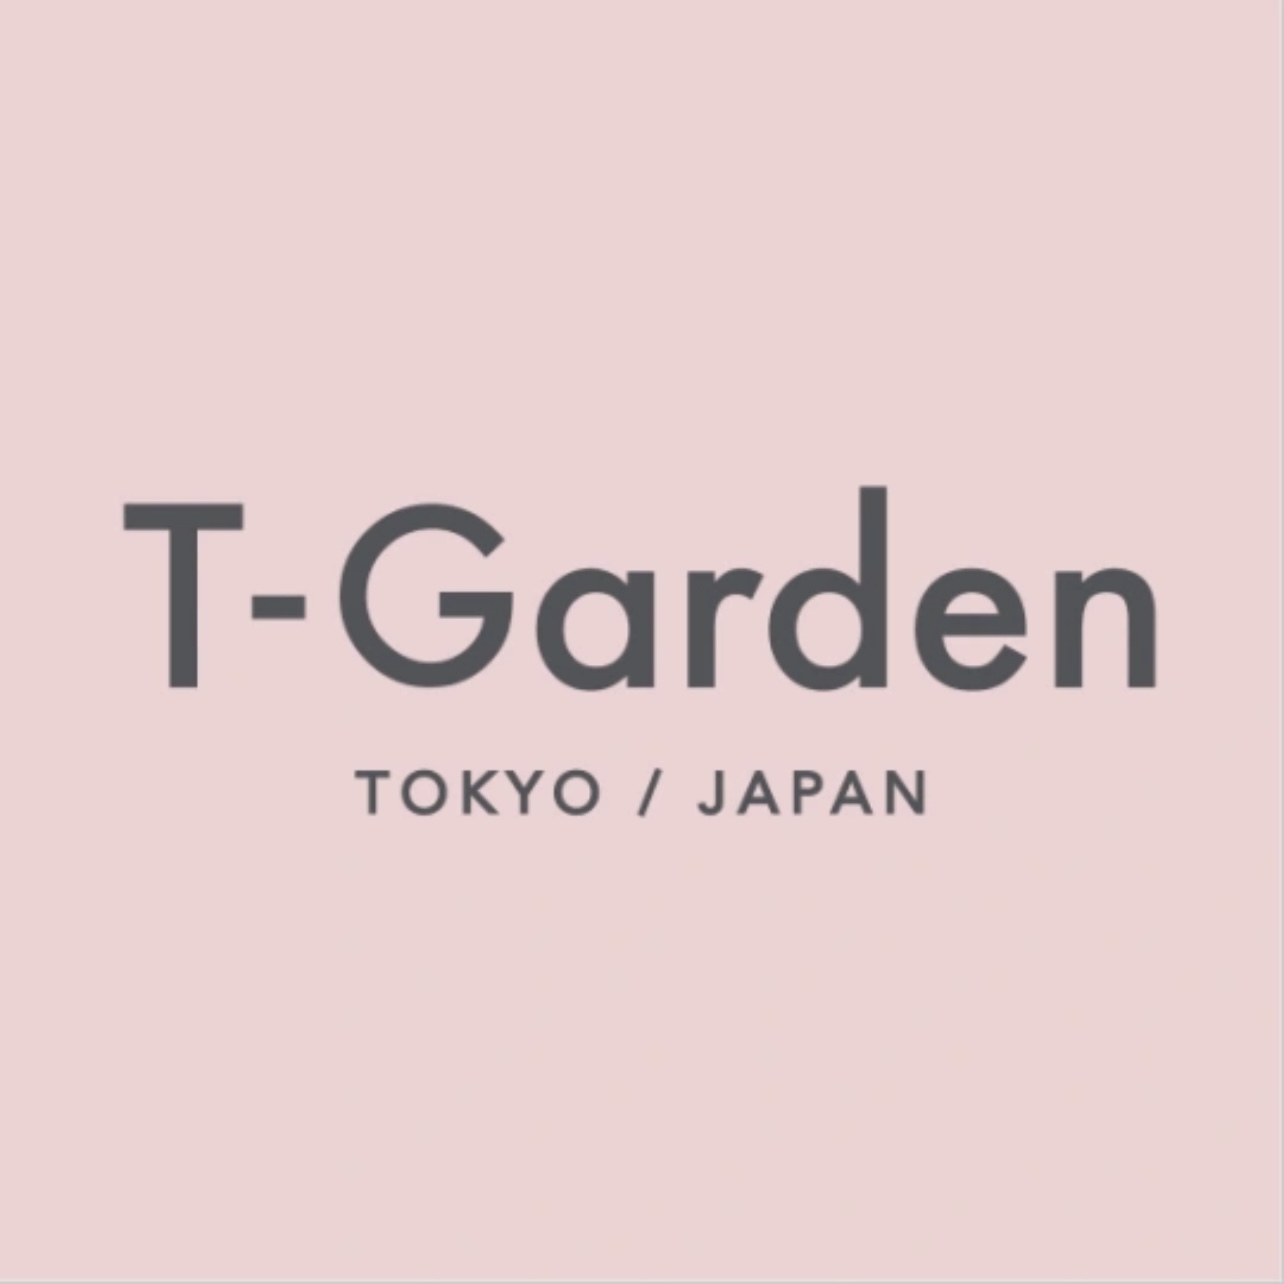 T-Garden